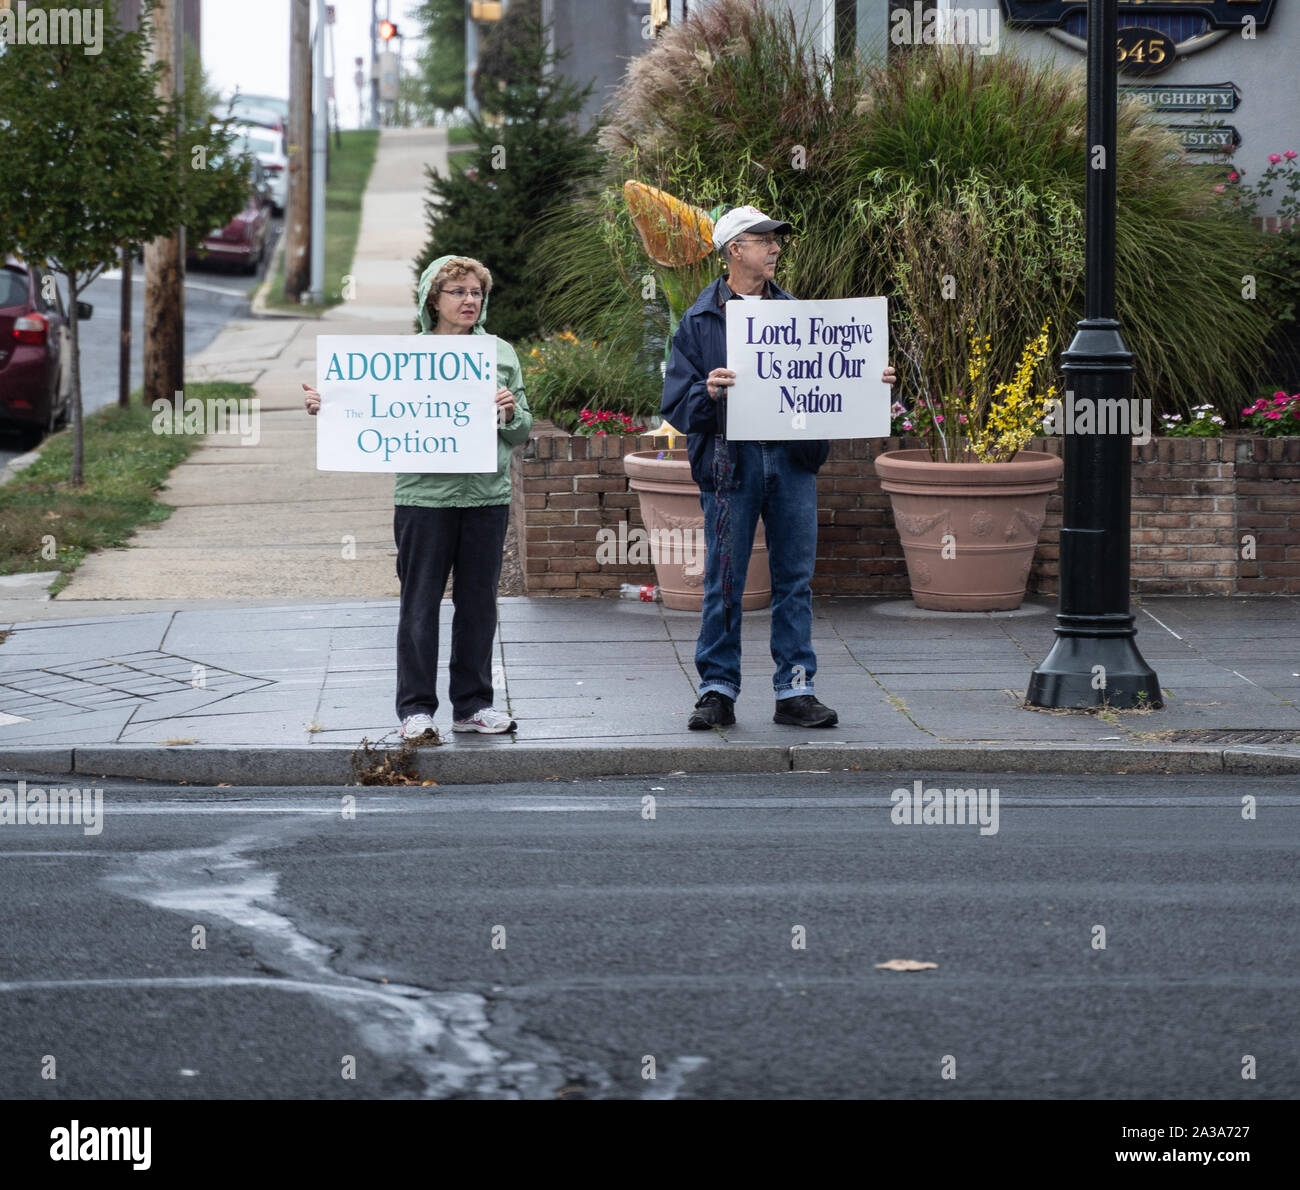 A ovest di lettura, Pennsylvania/USA - Ottobre 6, 2019: catena di vita evento: coppia Senior particpates vita evento della catena, anti-aborto protesta. Foto Stock